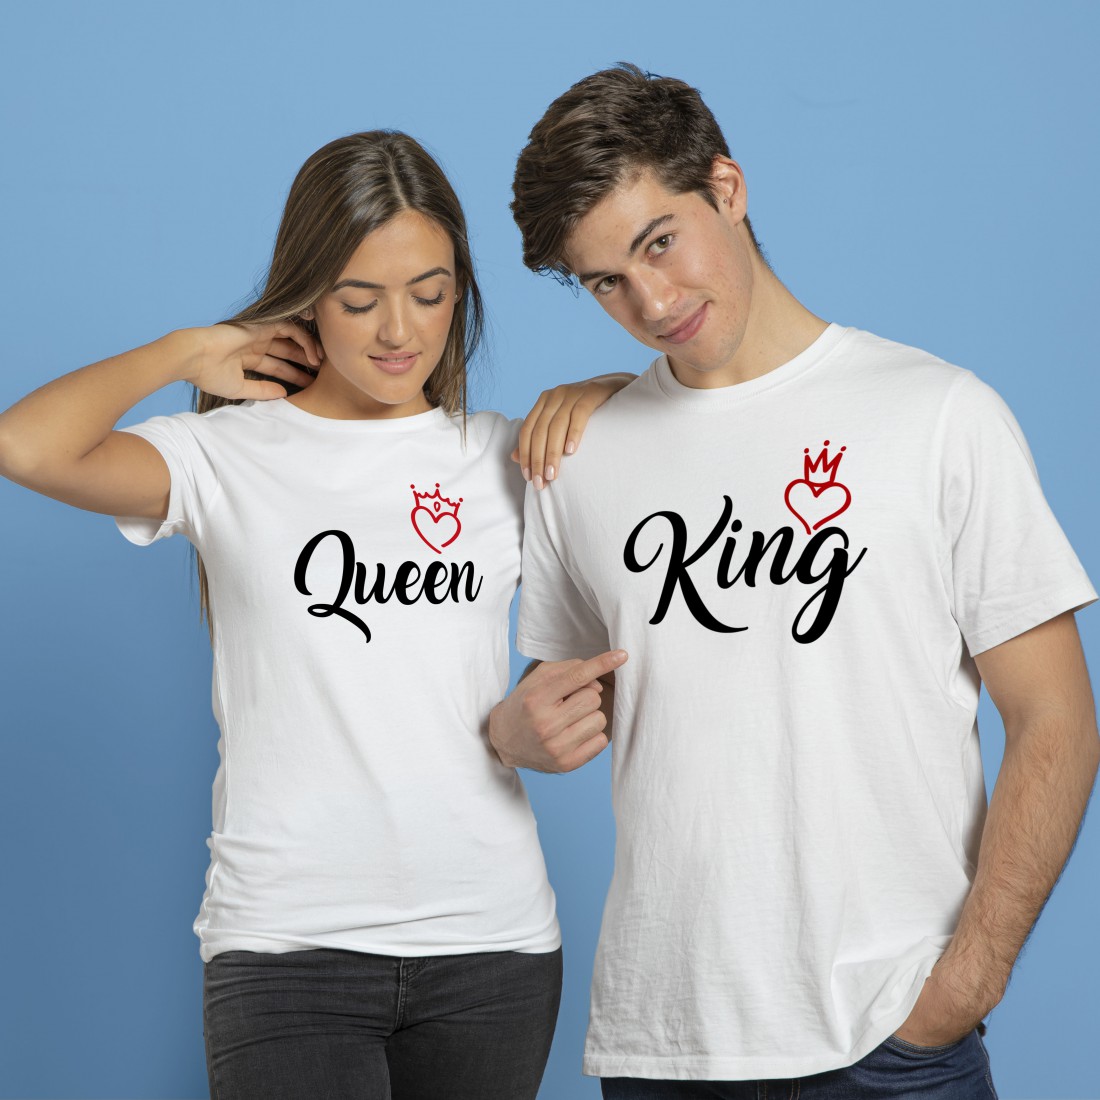 Camisetas pareja & Queen"